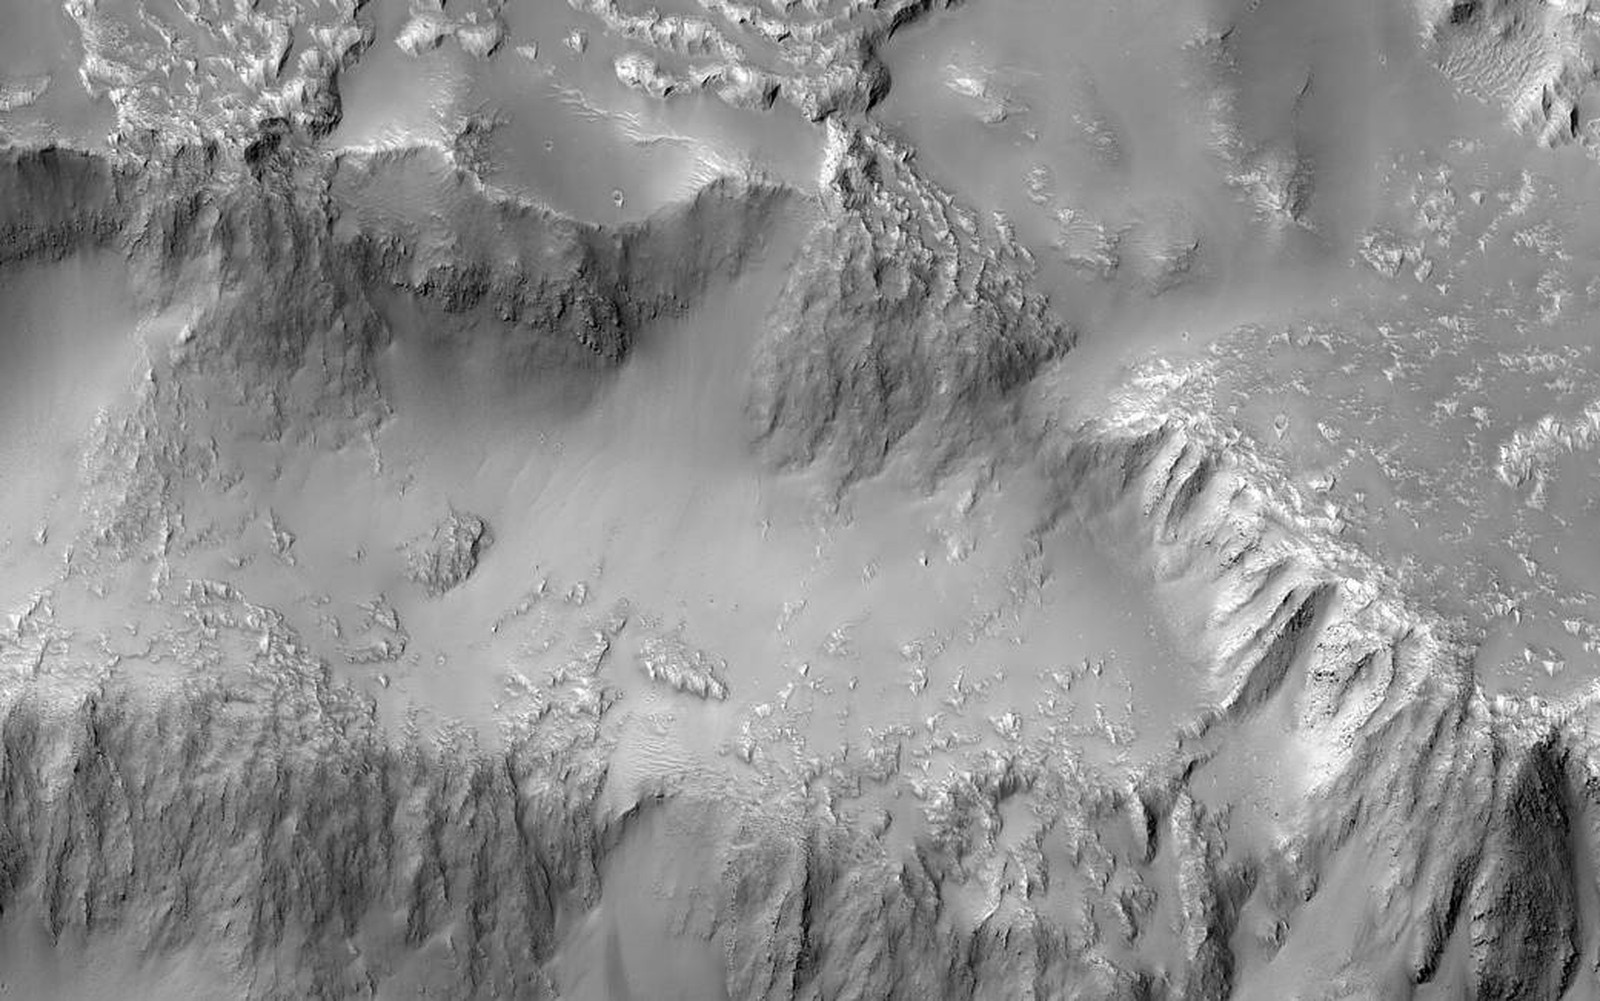 Marte, Niágara Falls, Nasa (Foto: NASA/JPL-Caltech/Univ. of Arizona)